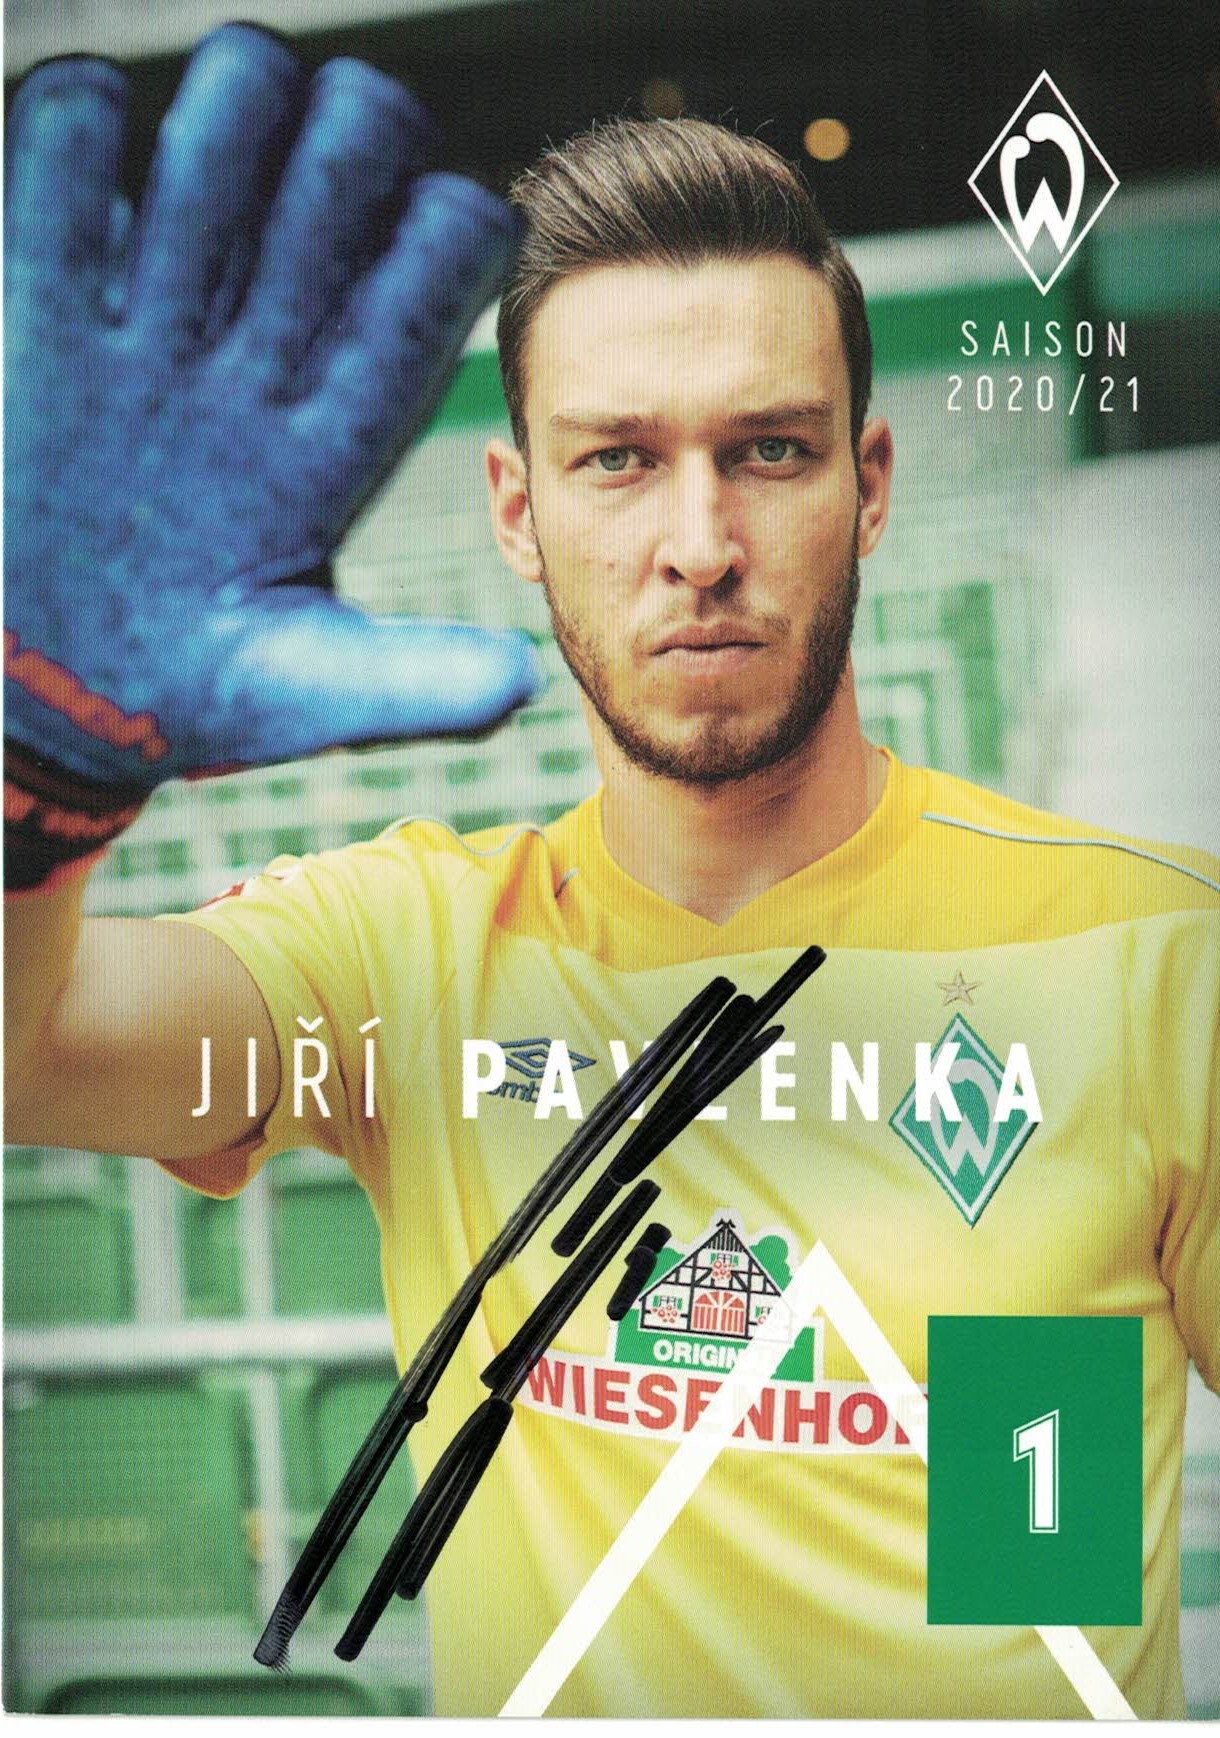 Jiri Pavlenka Werder Bremen 2020/21 Podpisova karta autogram